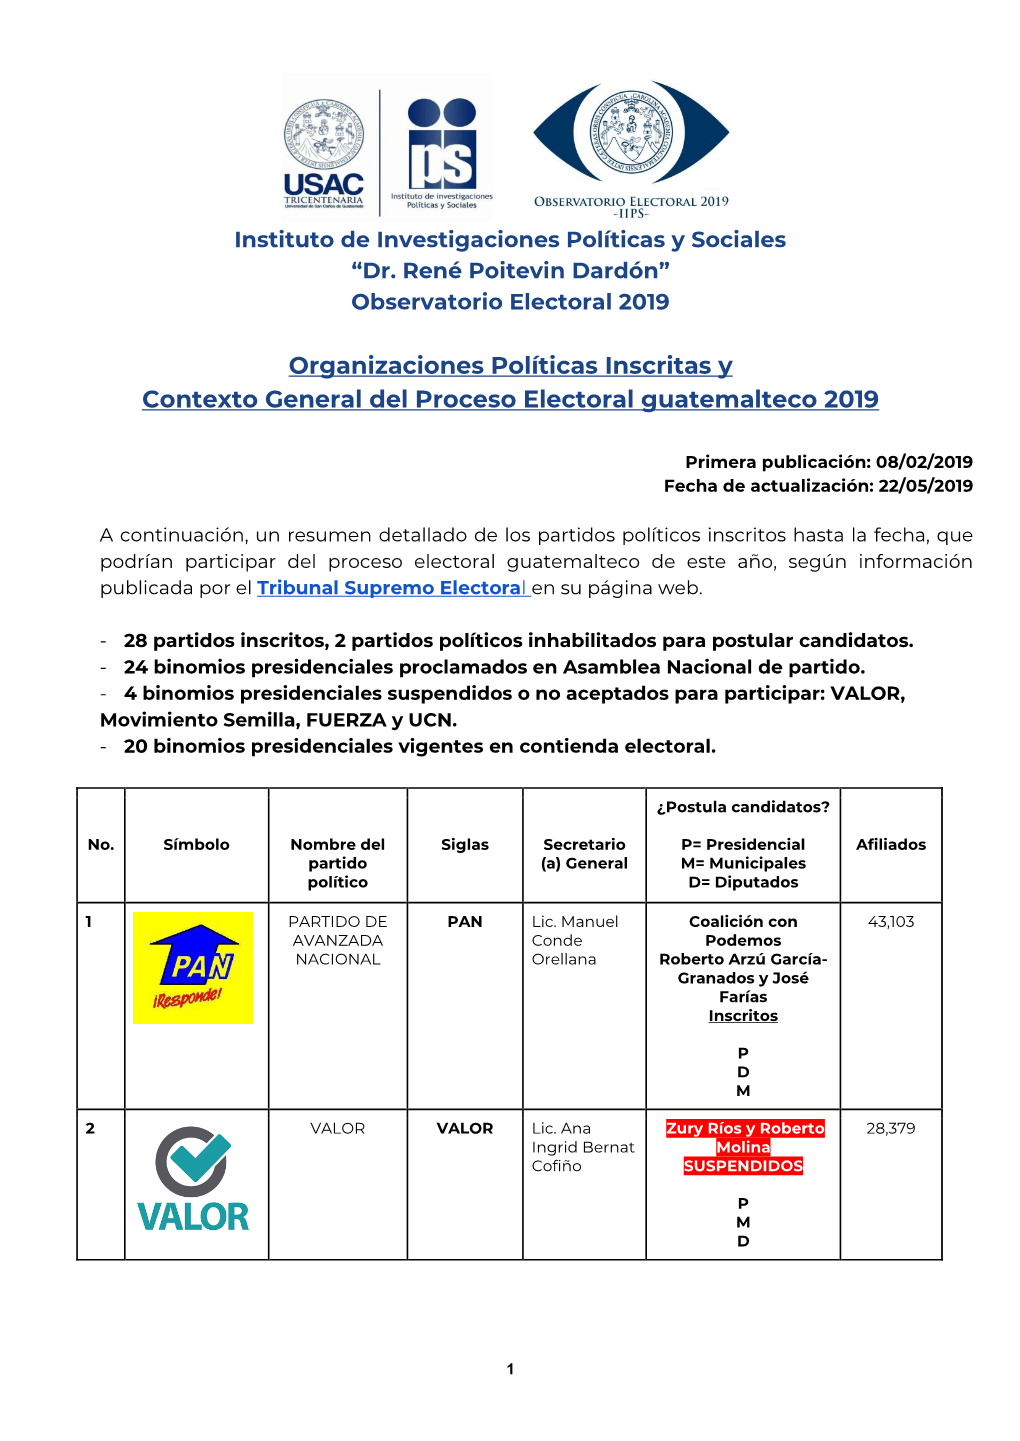 Organizaciones Políticas Inscritas Y Contexto General Del Proceso Electoral Guatemalteco 2019